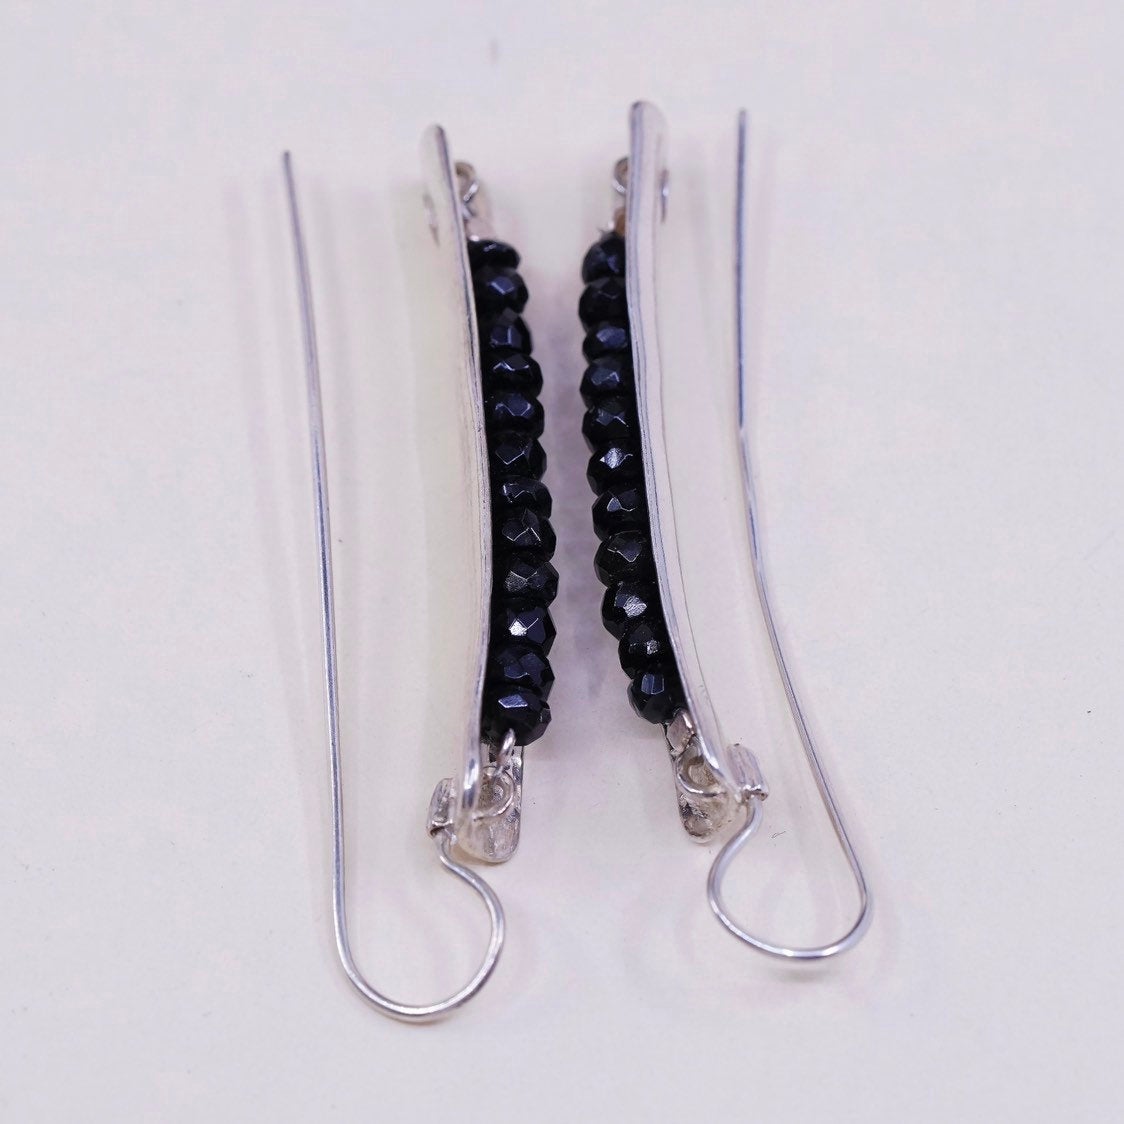 vtg Sterling silver handmade earrings, 925 w/ long obsidian beads, elegant